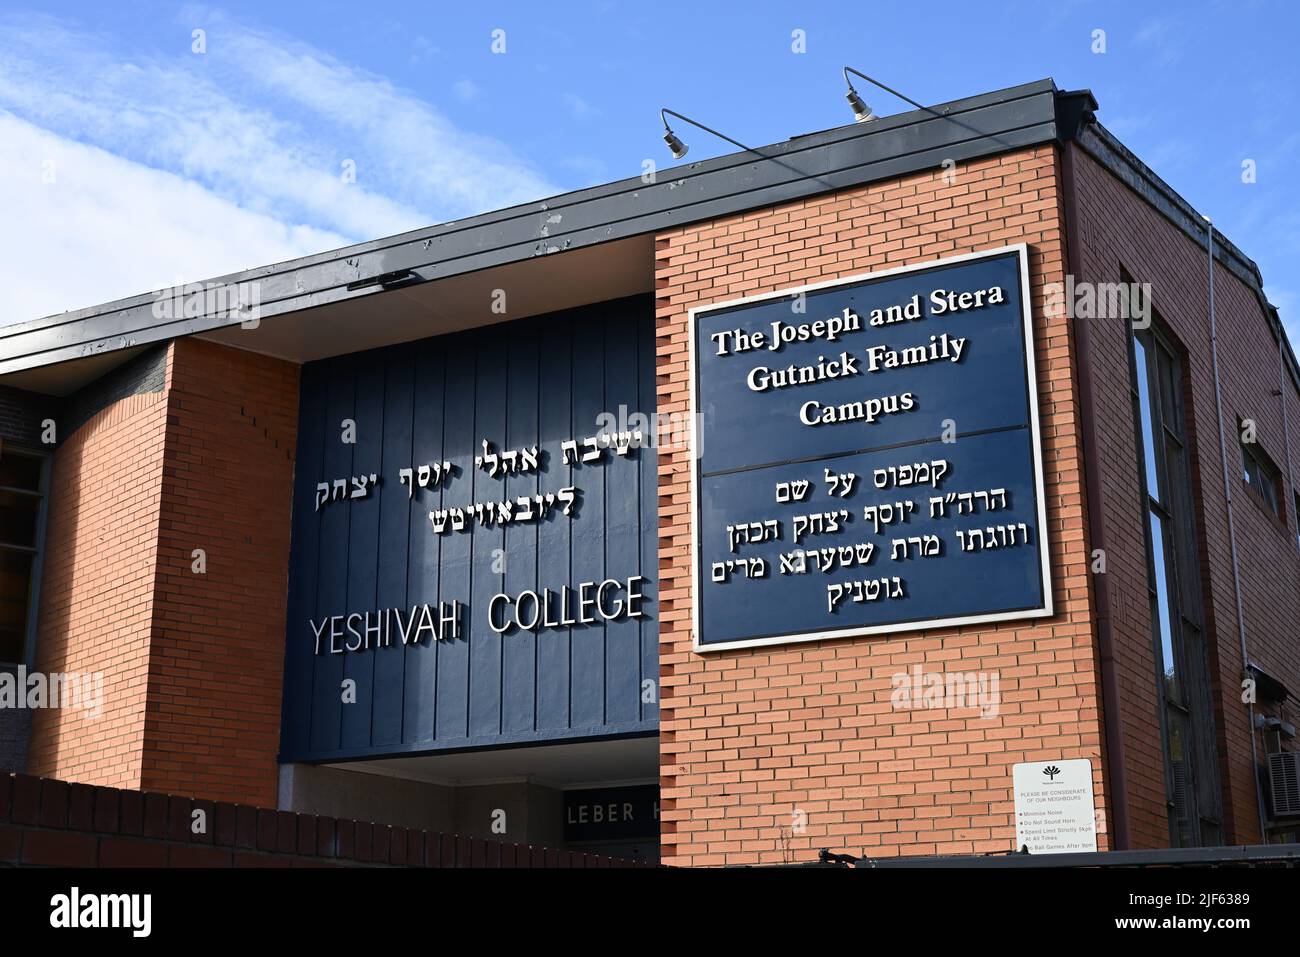 Außenansicht des Yeshiva College, einer orthodoxen jüdischen Schule in der Hotham Street in Melbournes Innenvororten, mit Schildern in Englisch und Hebräisch Stockfoto